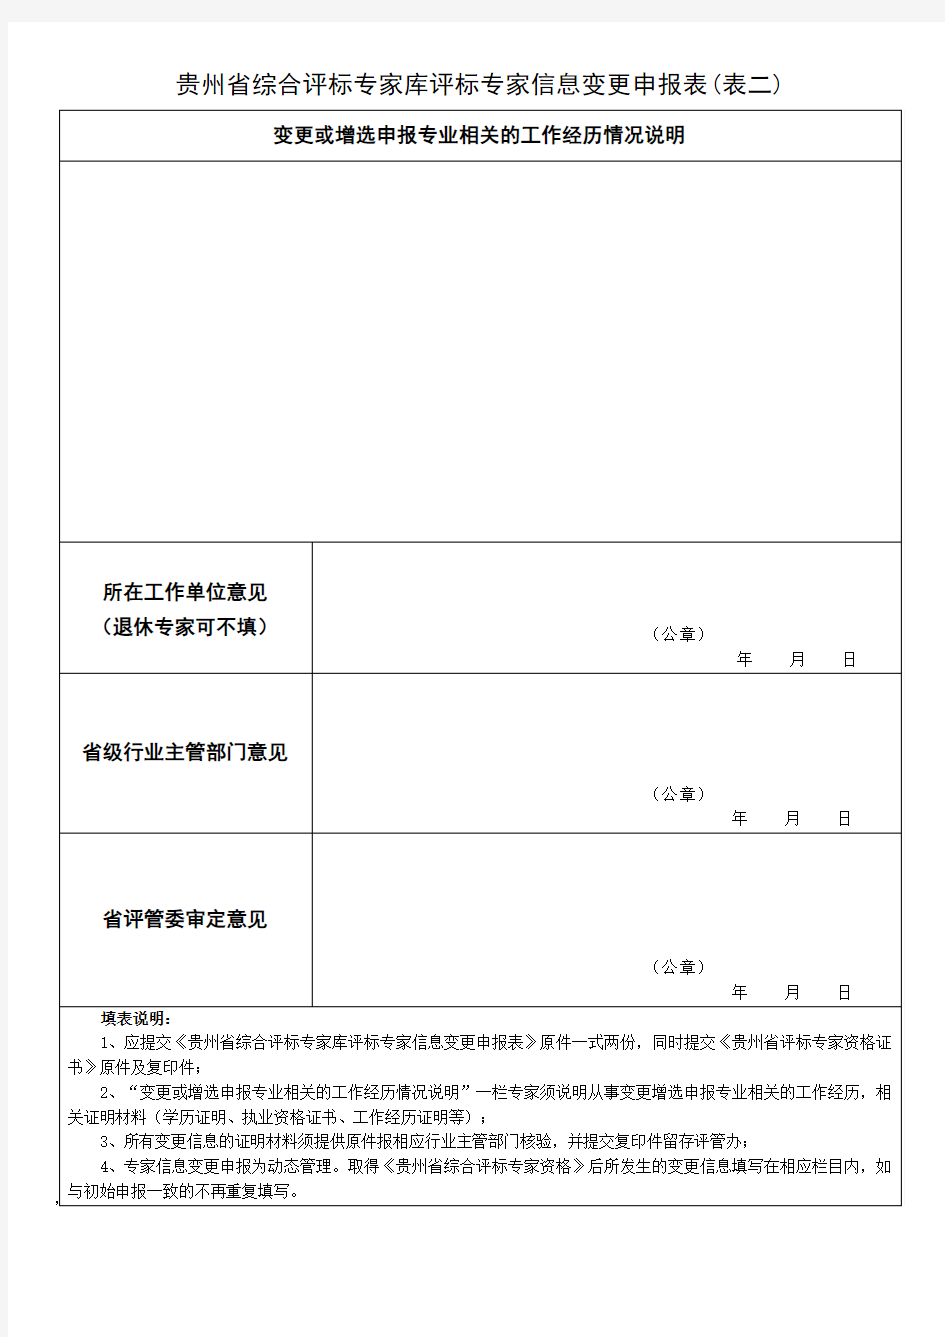 贵州省综合评标专家库评标专家信息变更申报表(表一)